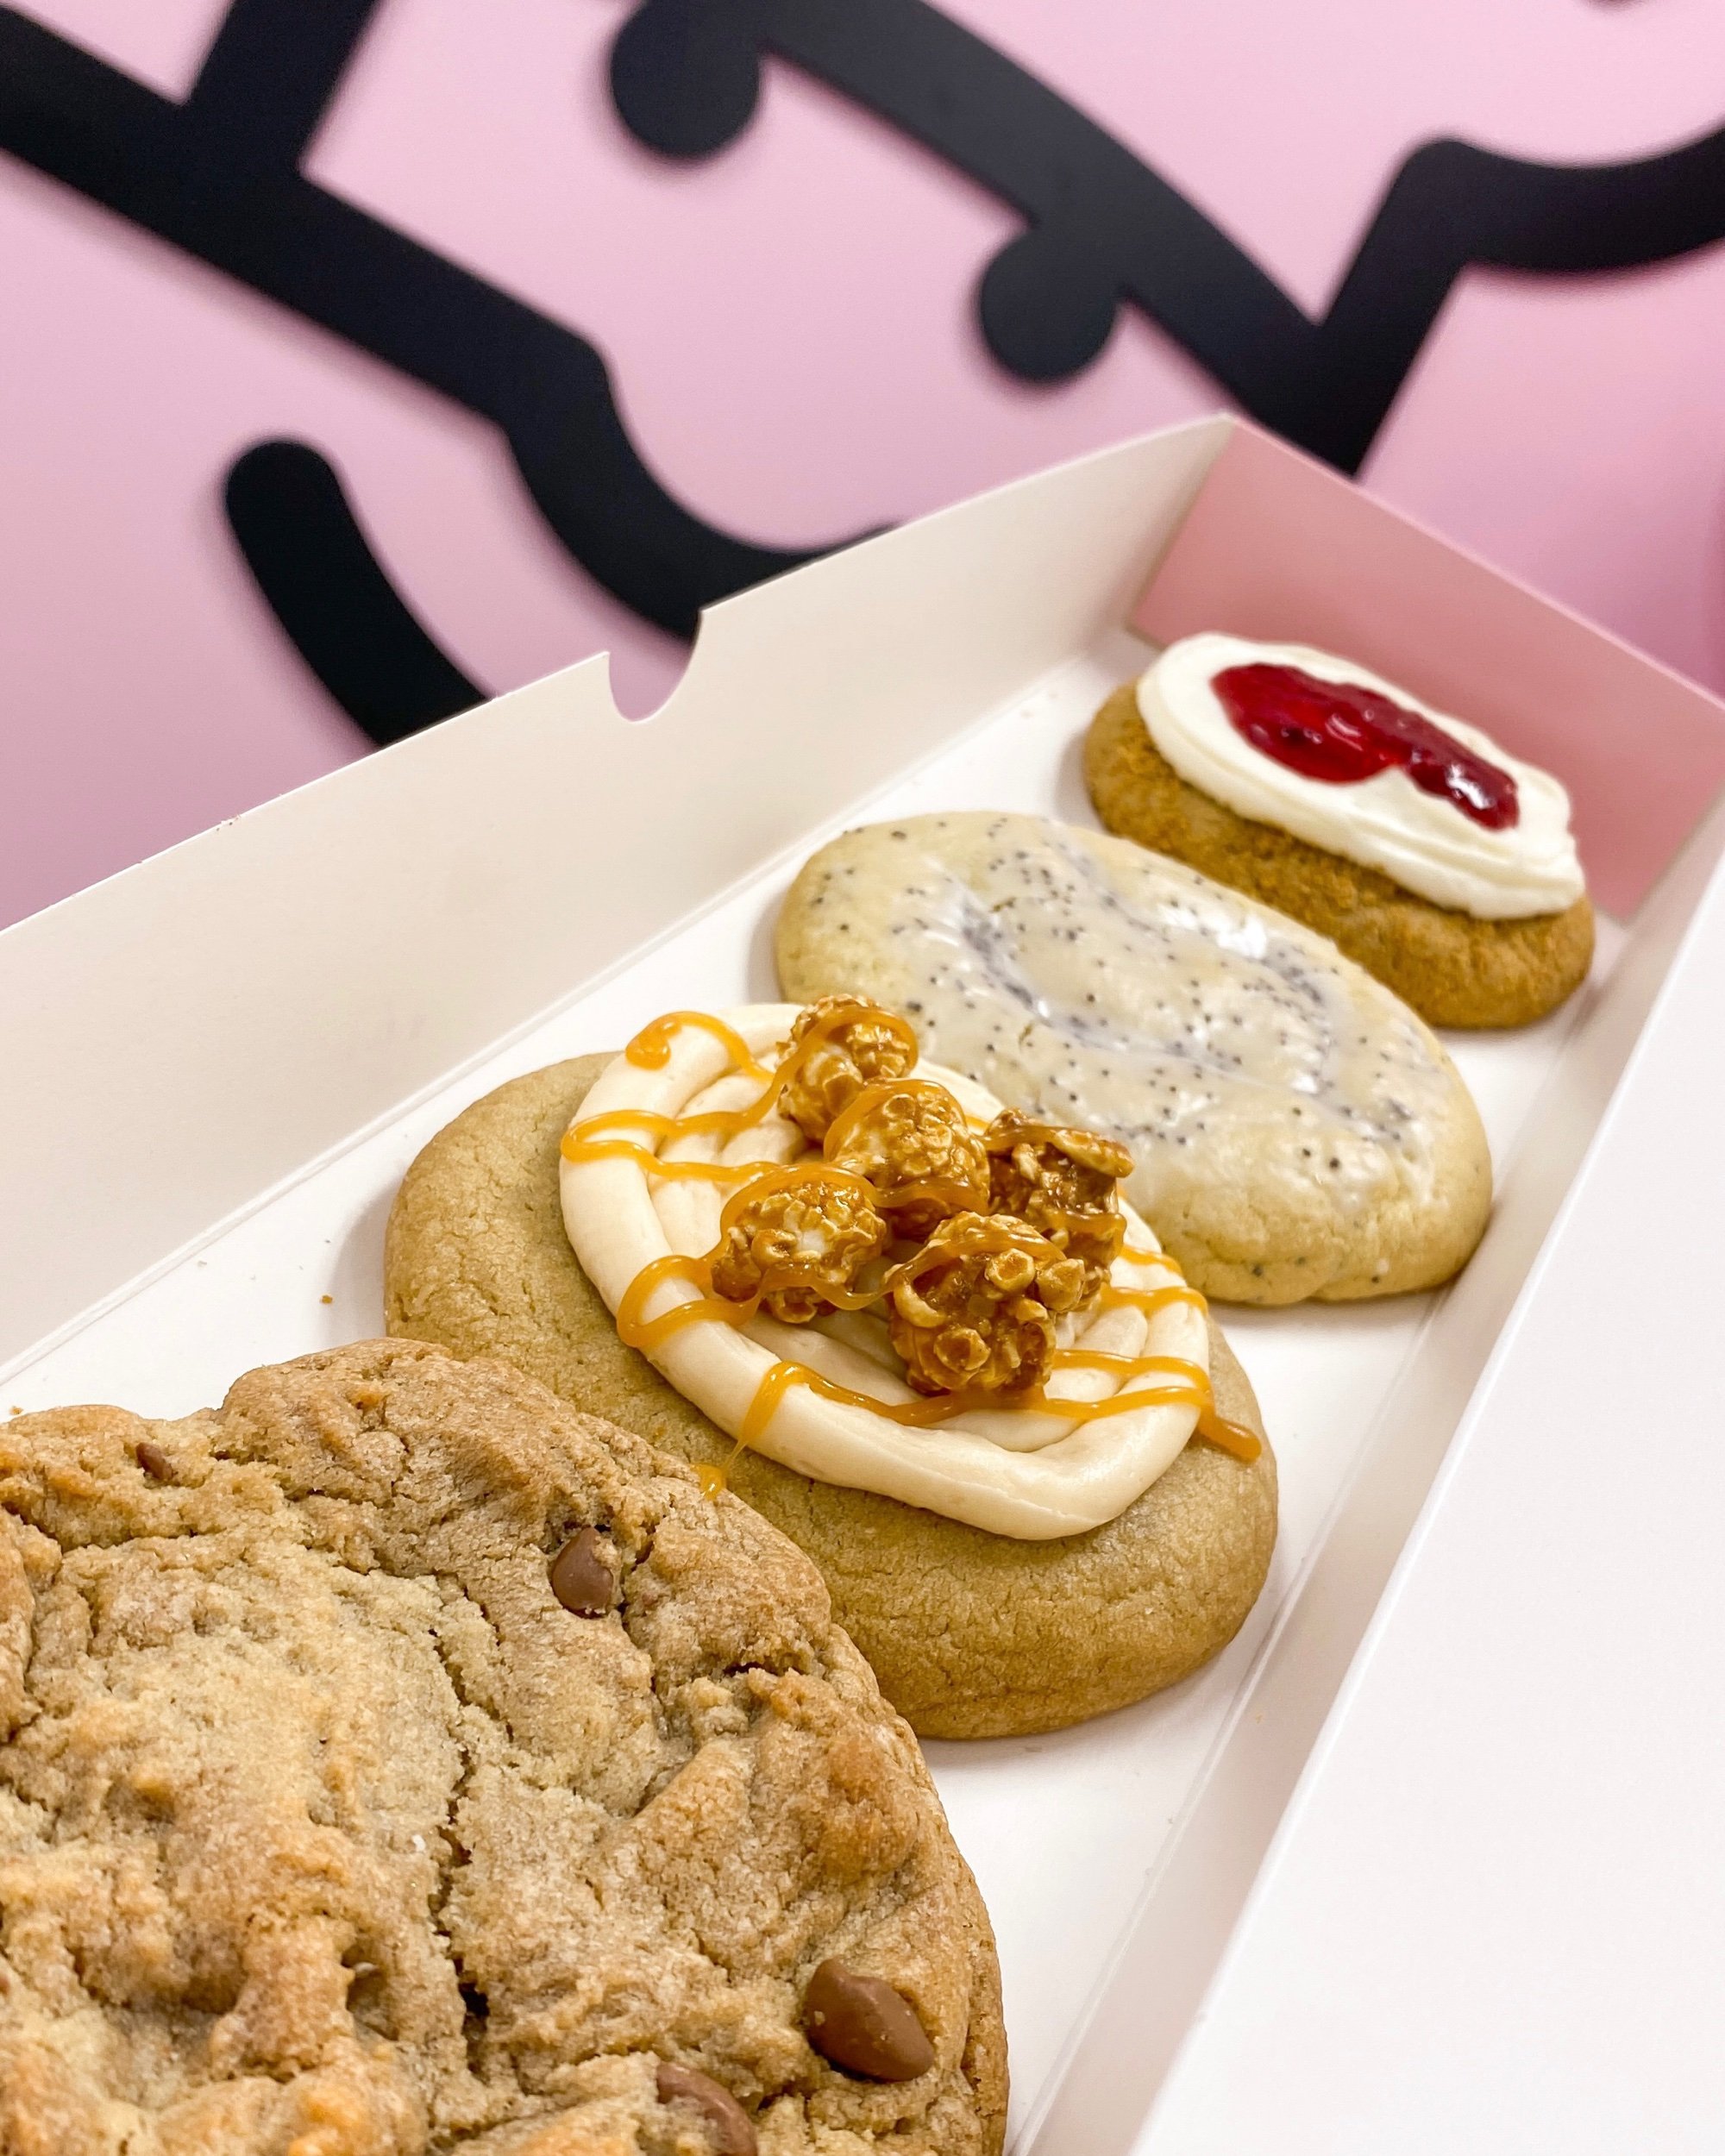 Crumbl Cookies — Naples Noms